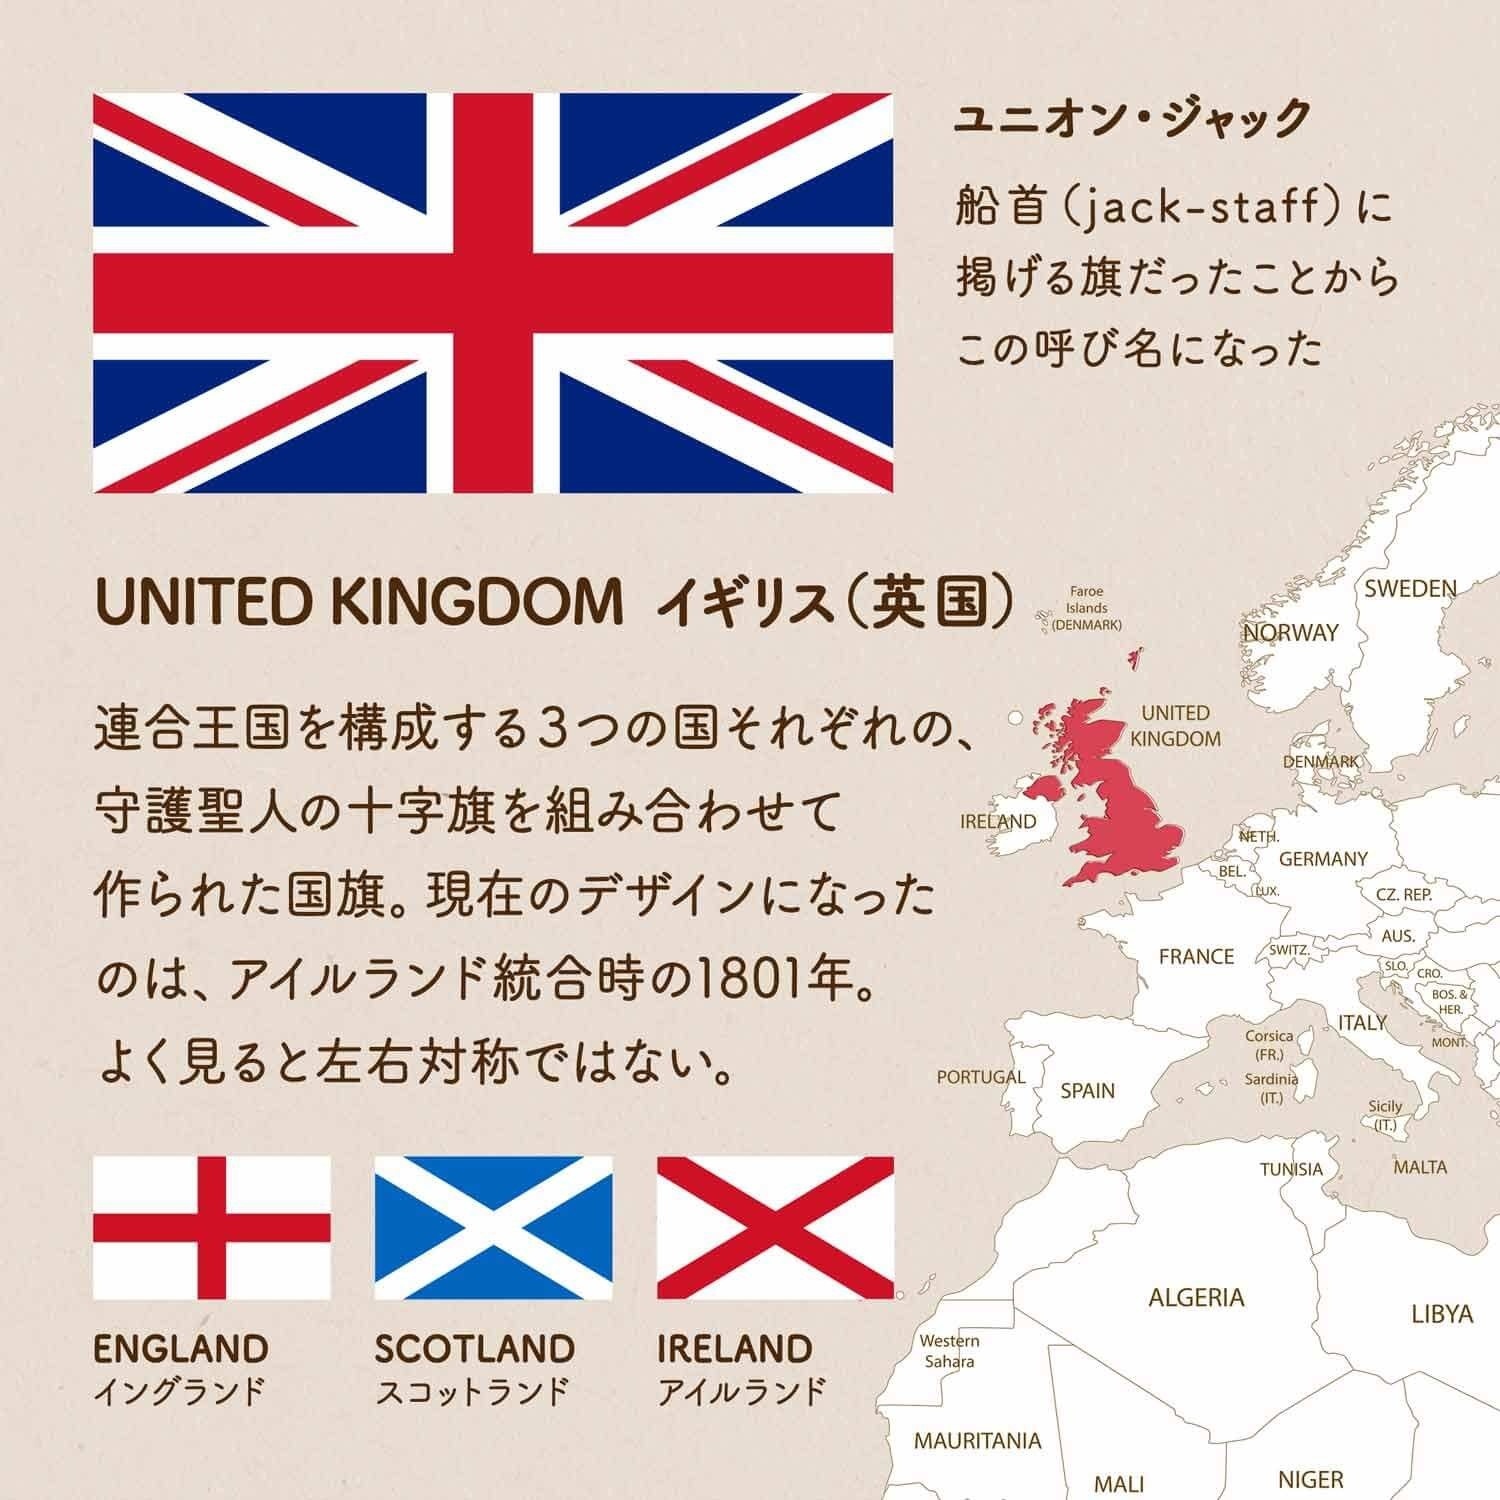 イギリスの国旗 | ヨーロッパ | 世界の国旗 - デザインから世界を学ぼう -